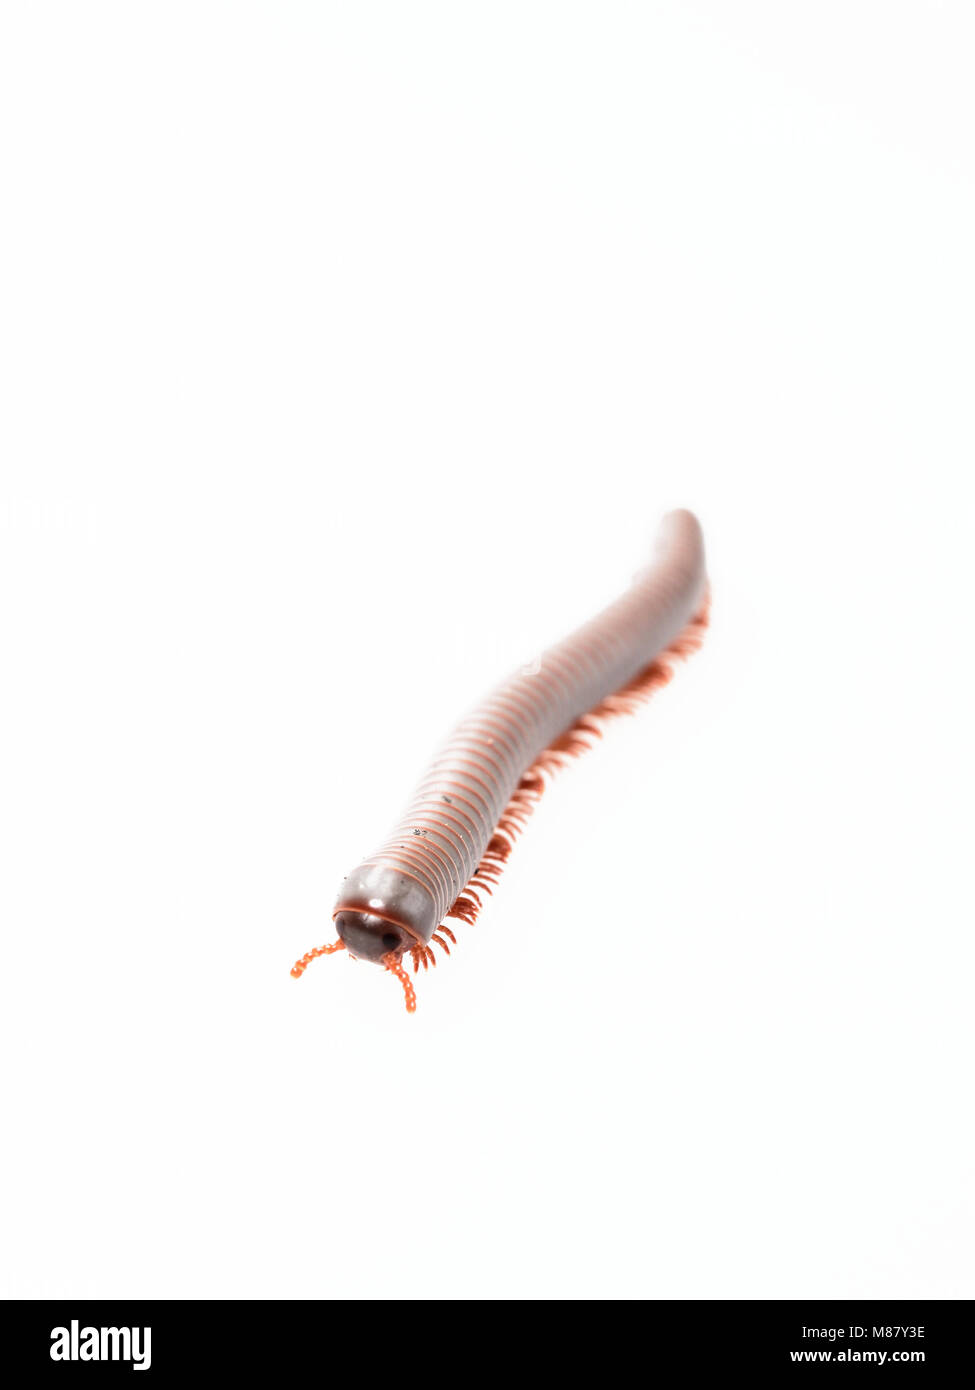 Tausendfüßer, Insekt mit langen Körper und viele Beine sehen aus wie Tausendfüßler, Wurm, oder mit dem Zug, die sehr langsam bewegen und die Spule in Spiralform auf weißem Hintergrund Stockfoto